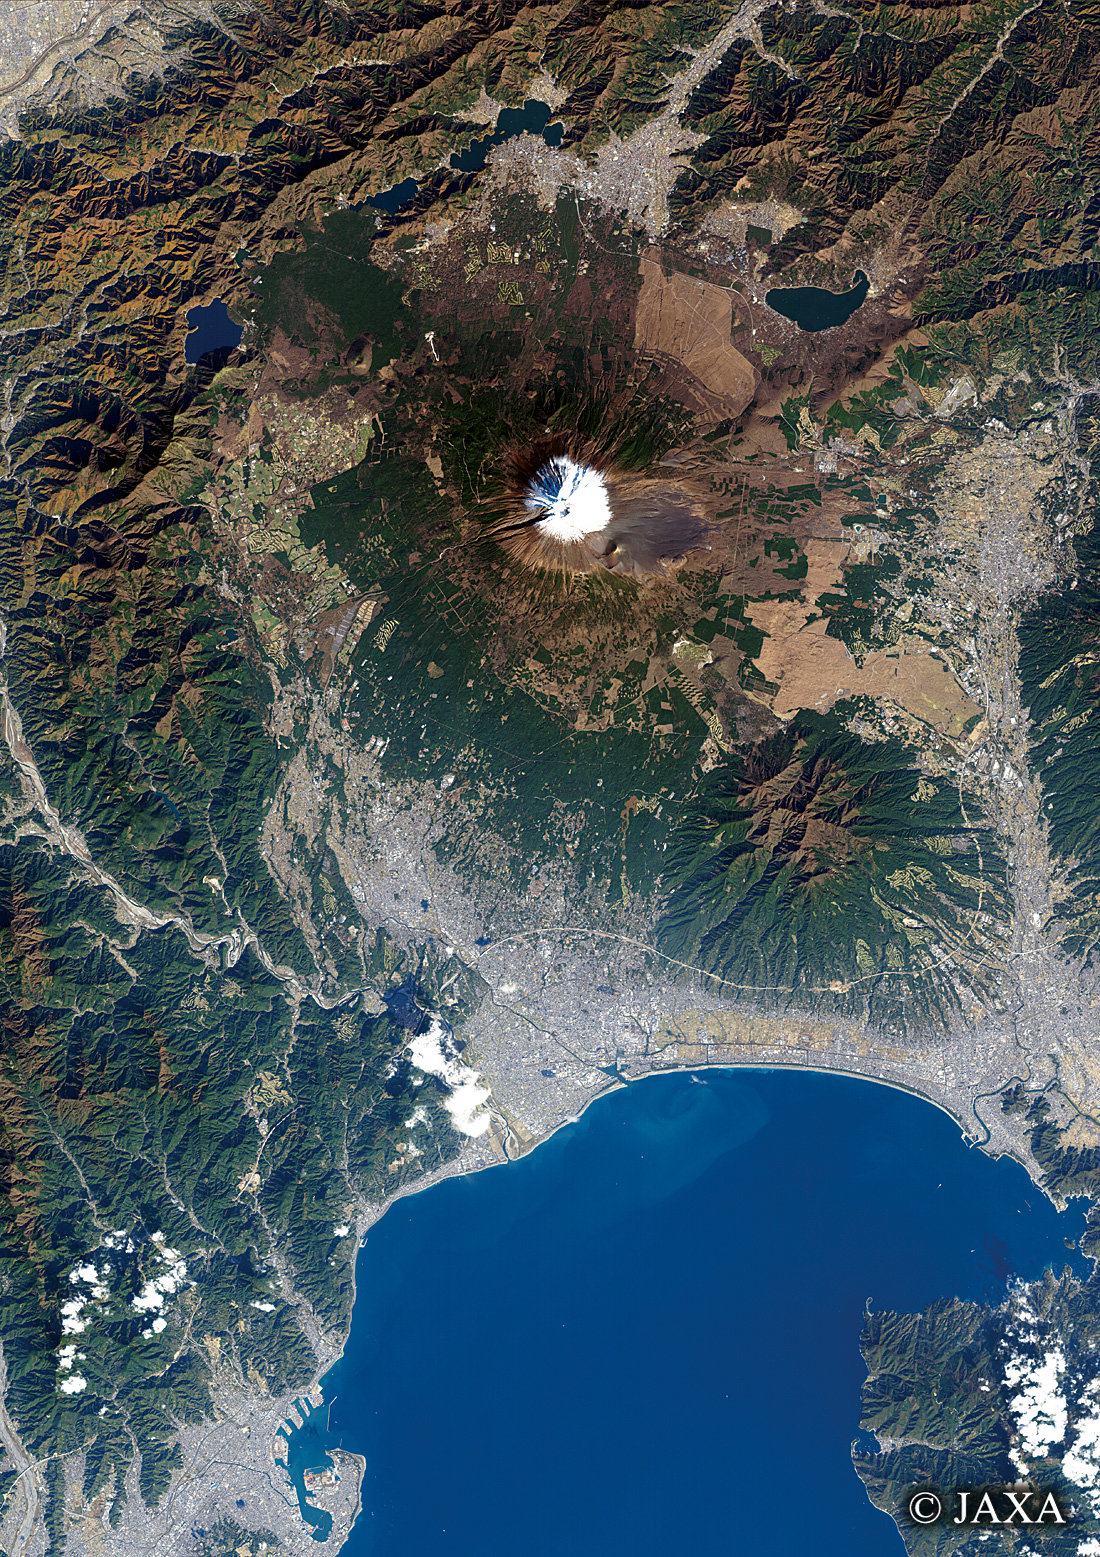 だいちから見た日本の都市 富士市周辺:衛星画像